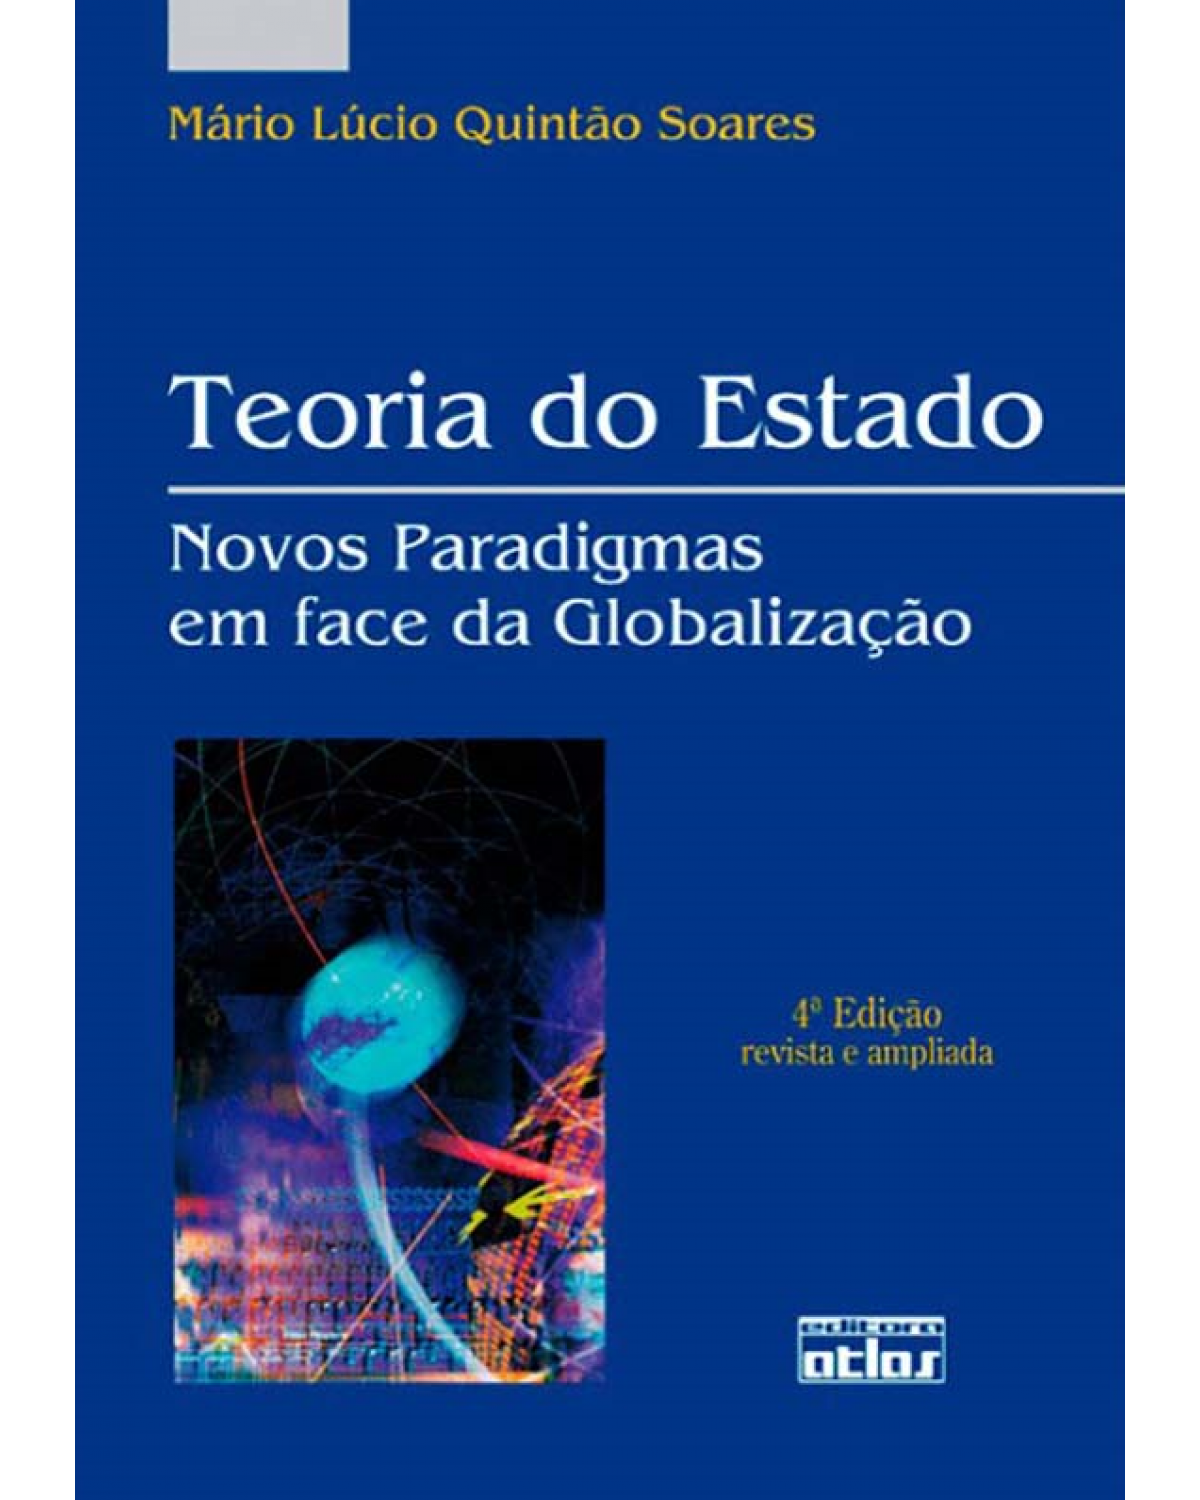 Teoria do Estado - Novos paradigmas em face da globalização - 4ª Edição | 2011